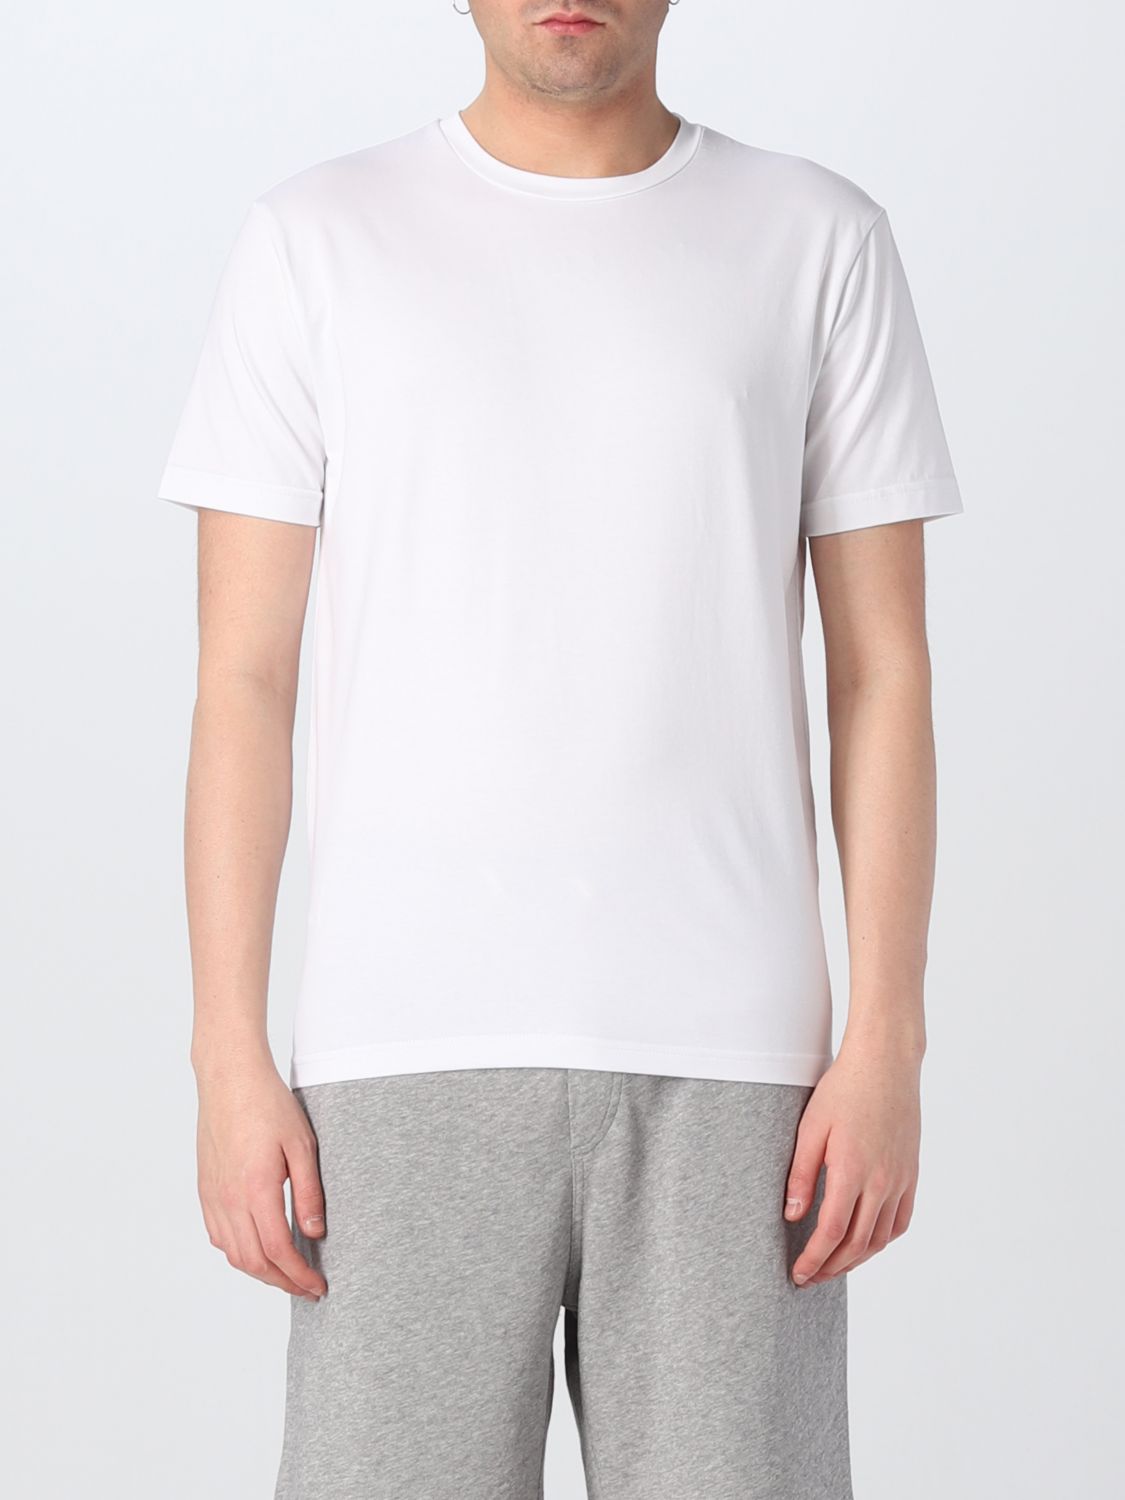 T-shirt Daniele Alessandrini: Daniele Alessandrini t-shirt for men white 1